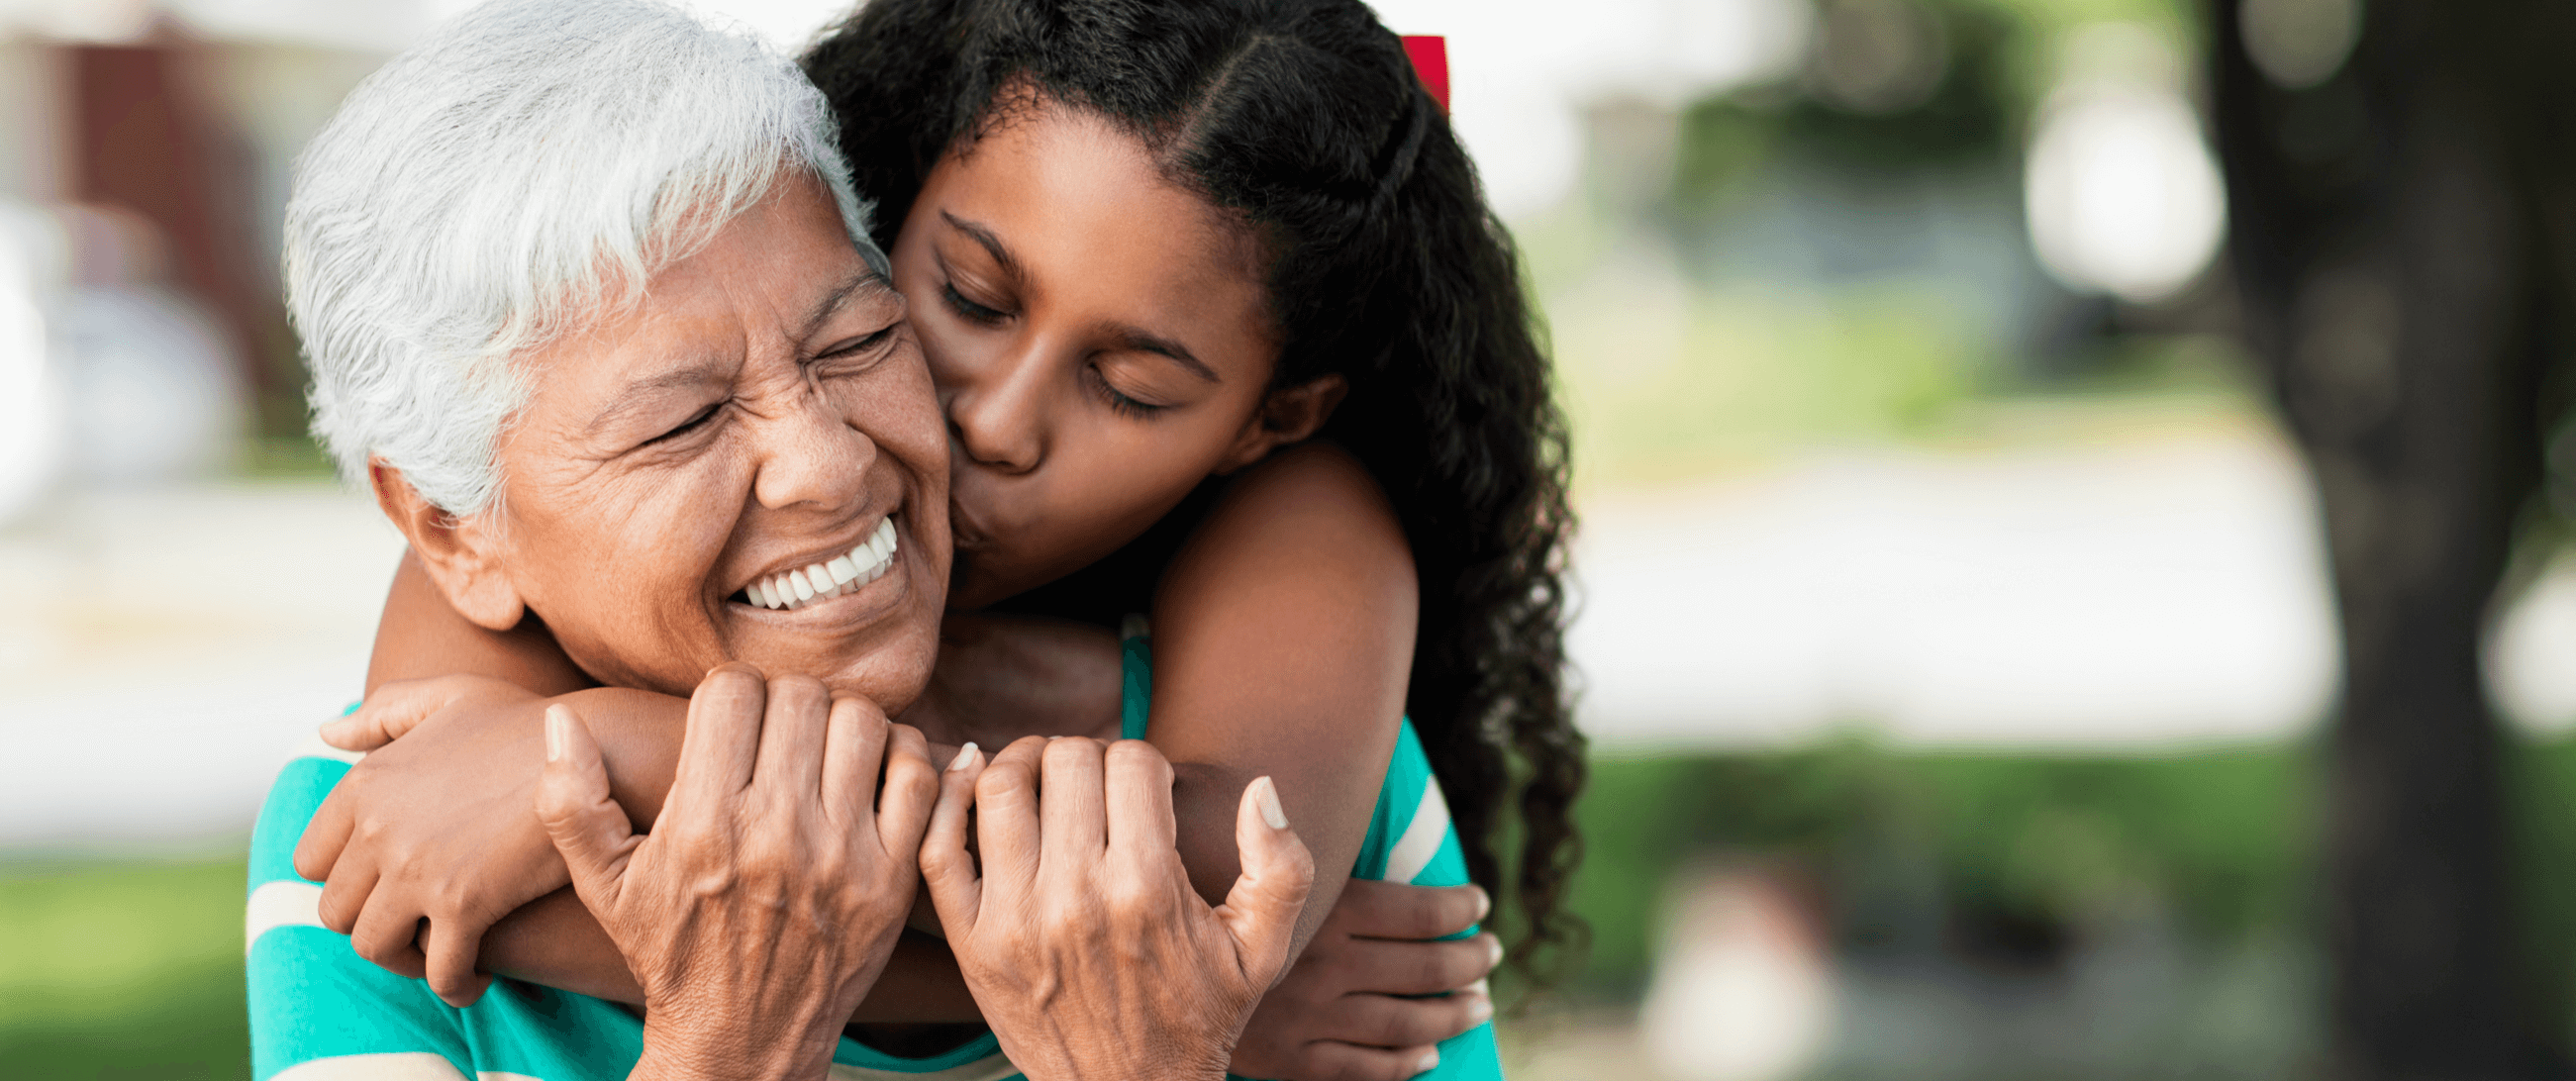 grandma and granddaughter hugging